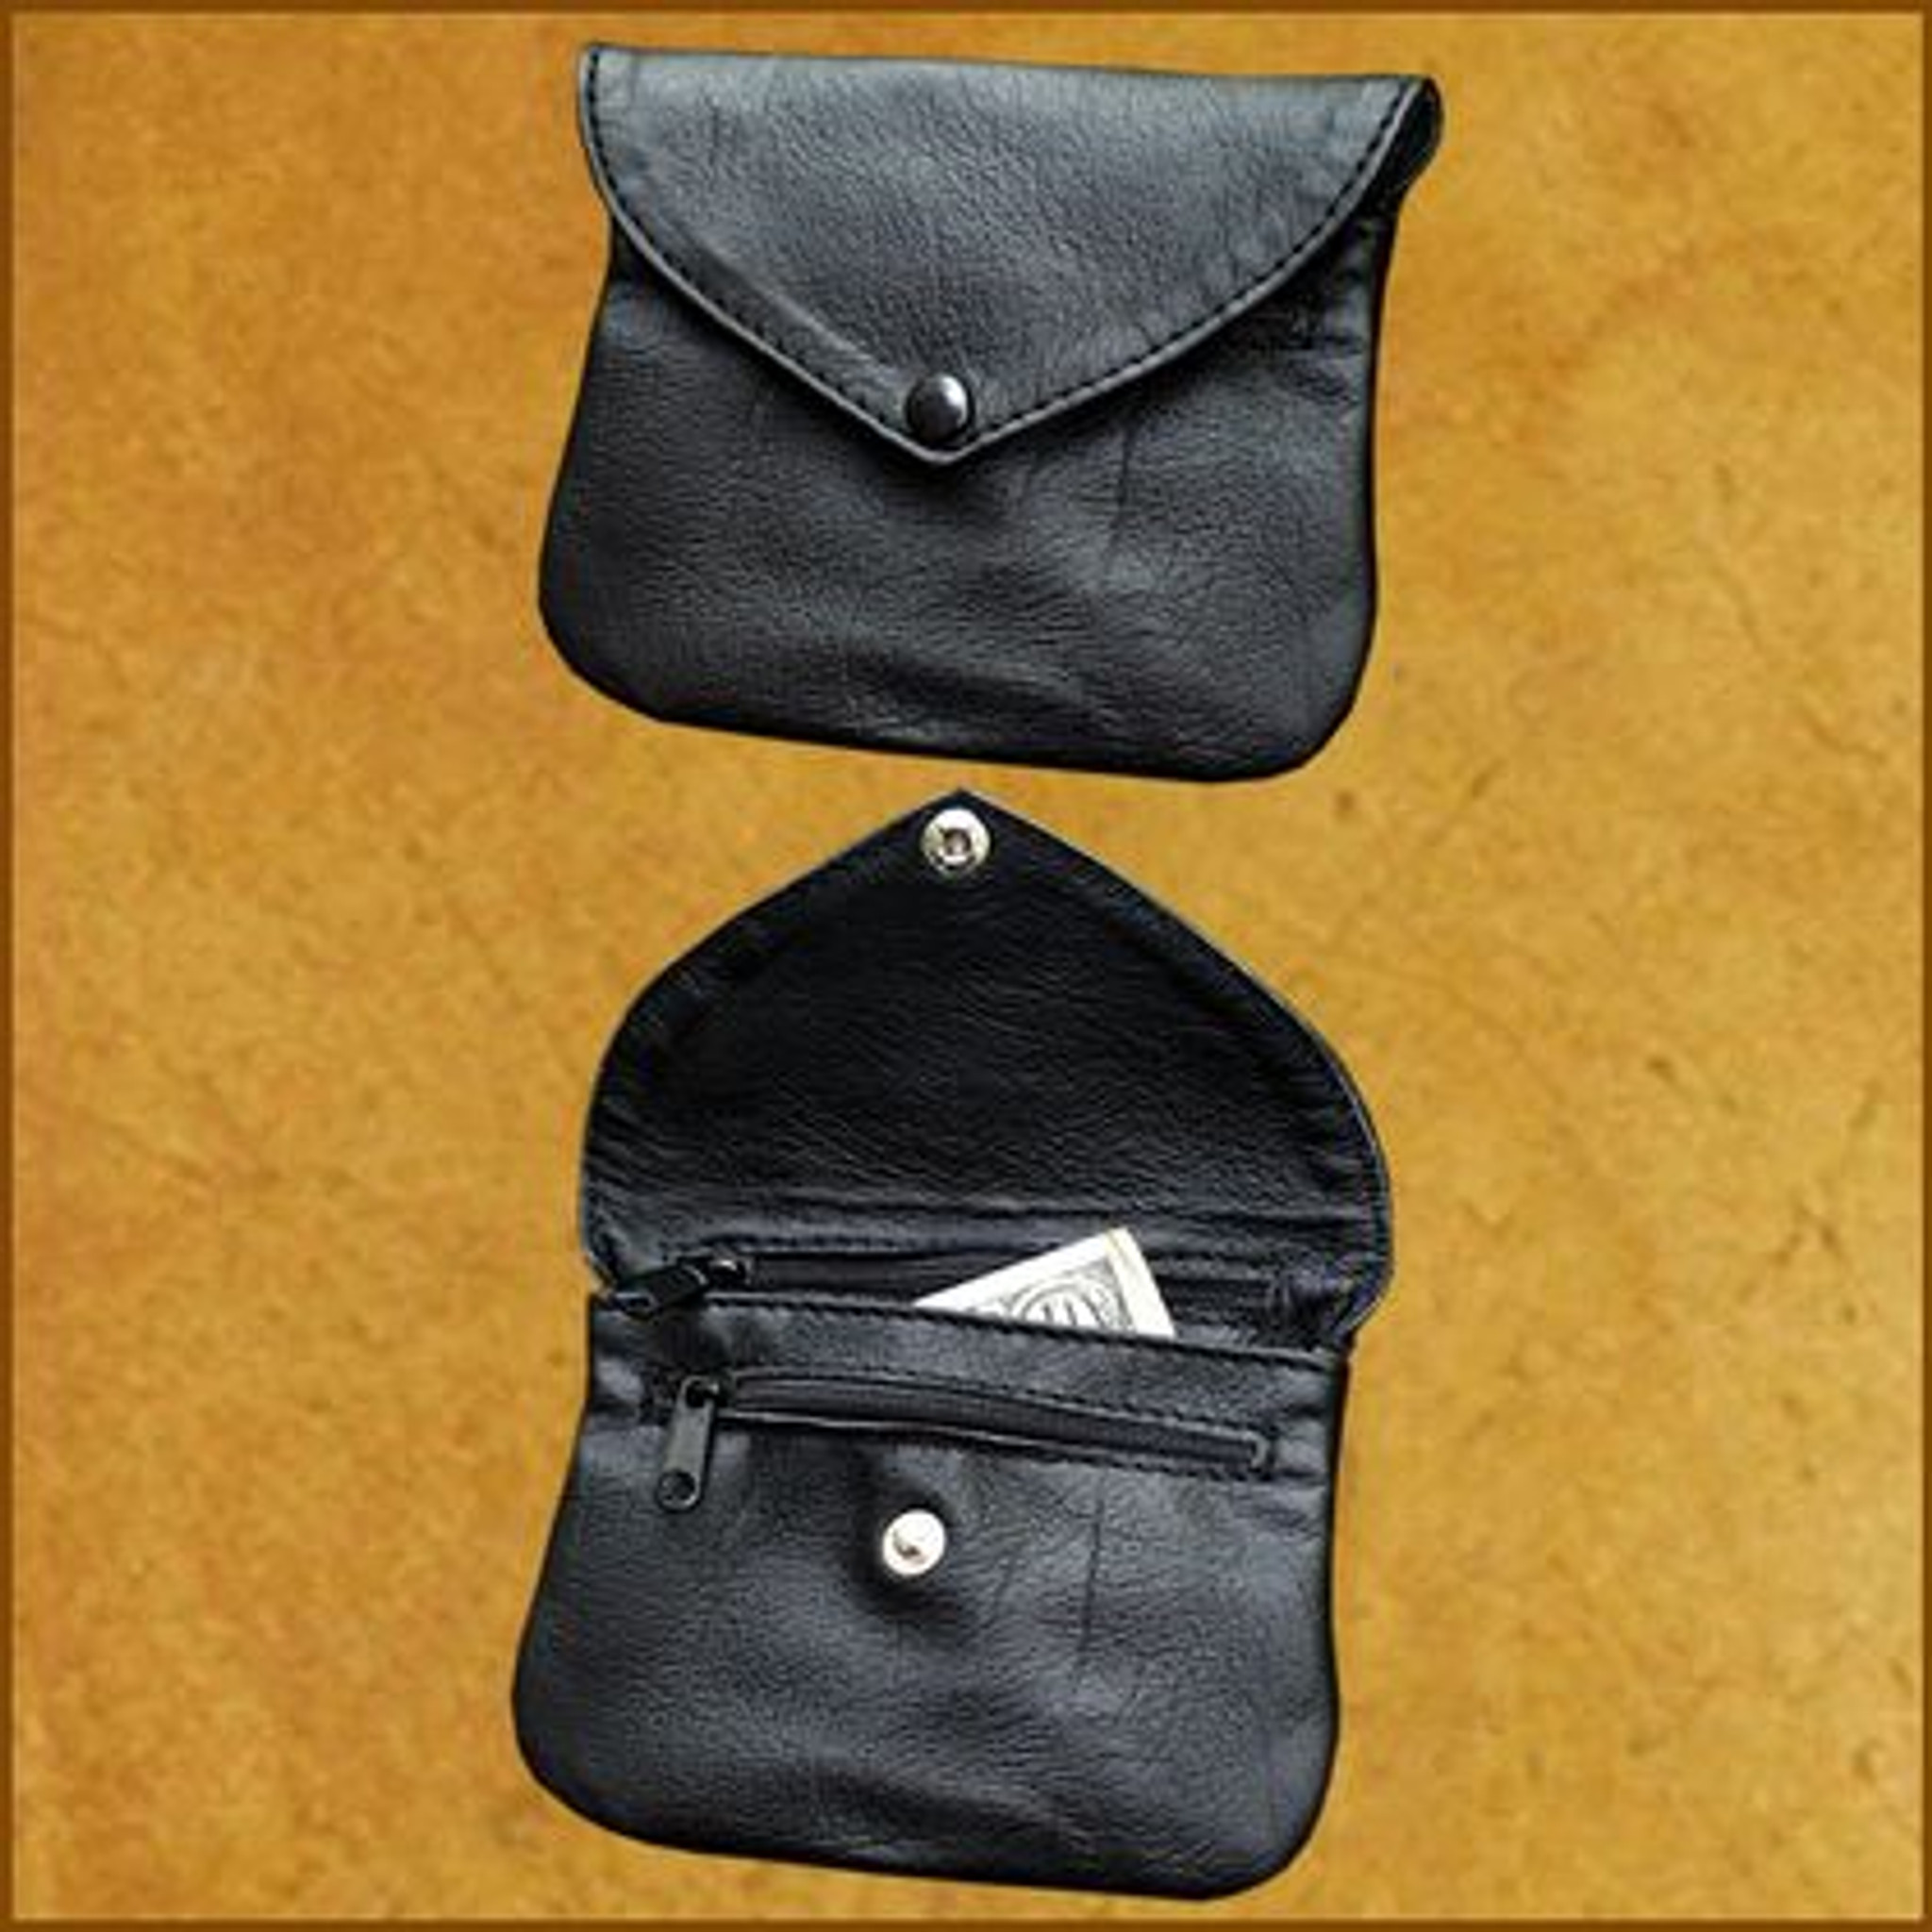 Small zipper pouch tutorial – Quilt in Progress